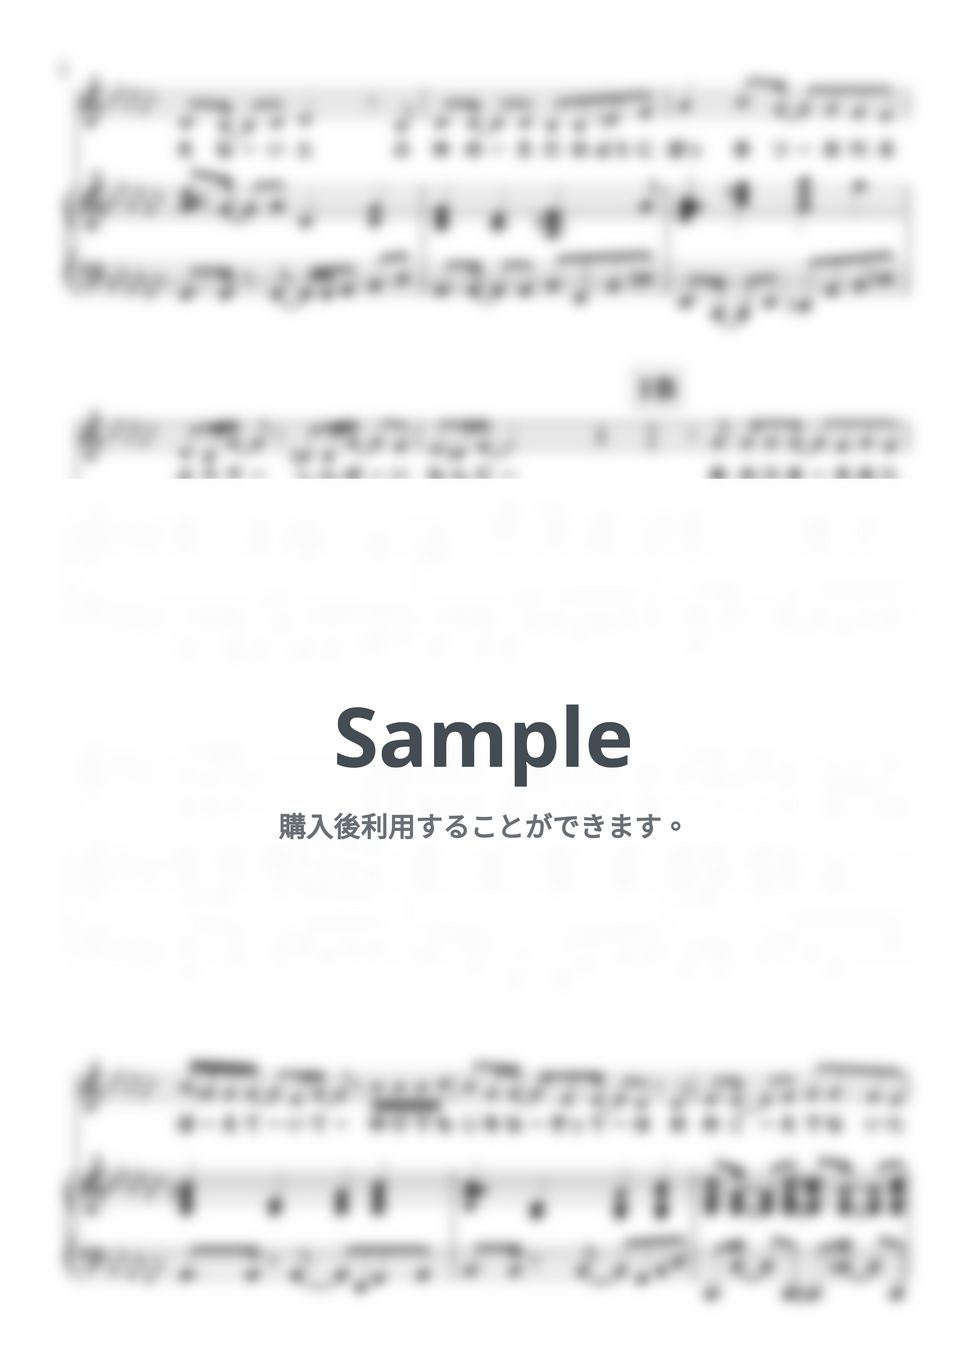 石川智晶 - Vermillion (ピアノ弾き語り/『ぼくらの』) by 鈴木歌穂